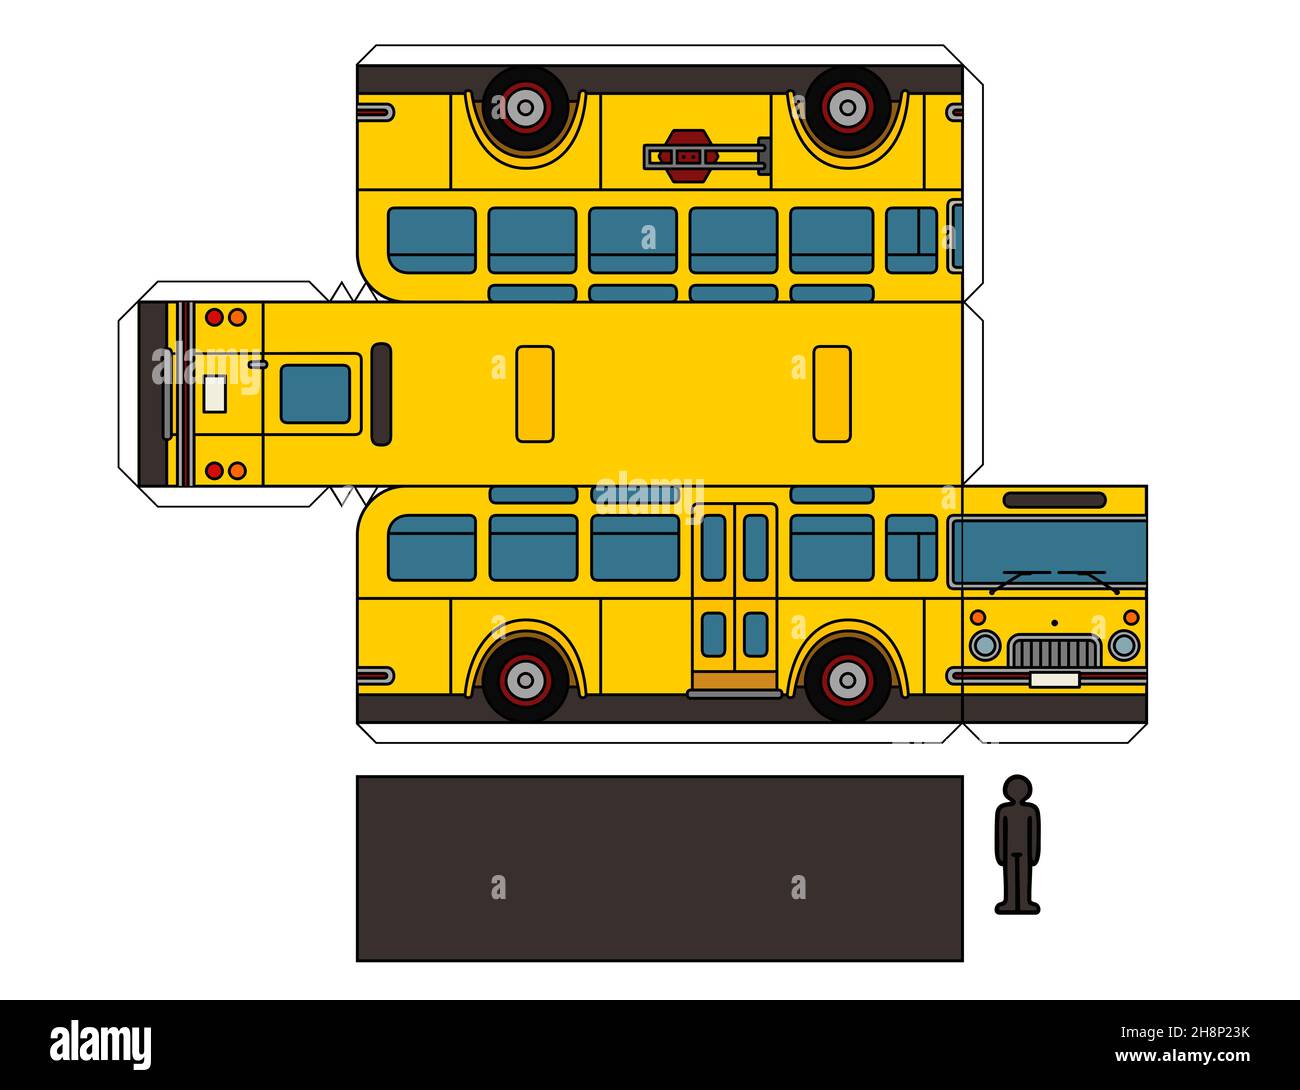 Modello cartaceo di un autobus scolastico giallo d'epoca Foto Stock